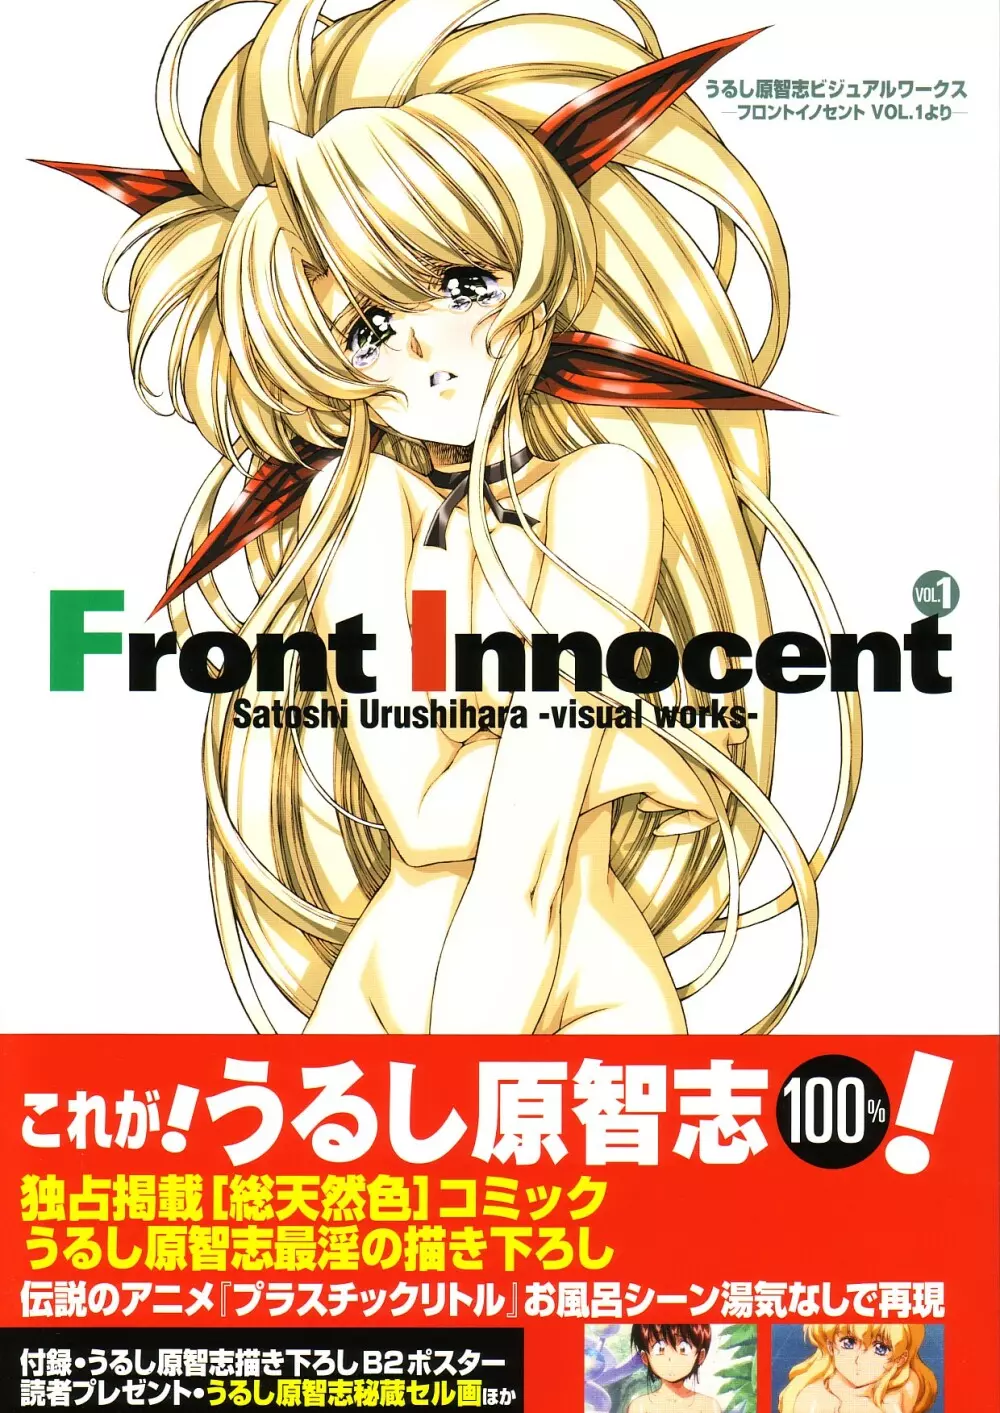 Front Innocent #1: Satoshi Urushihara Visual Works 1ページ